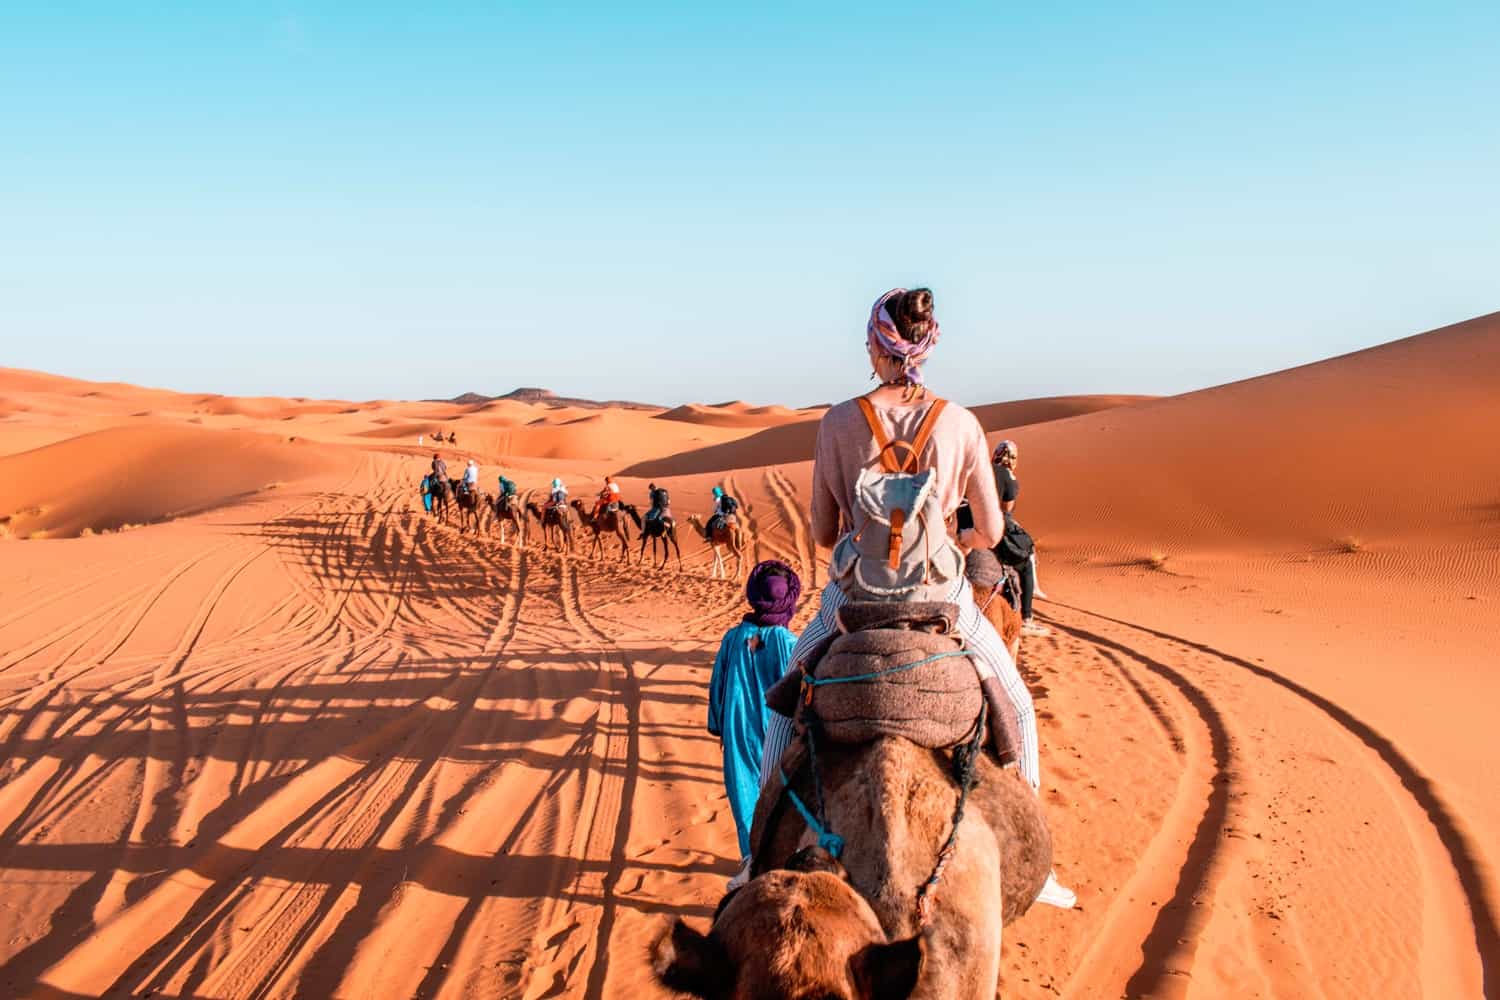 Sahara desert girl on camel